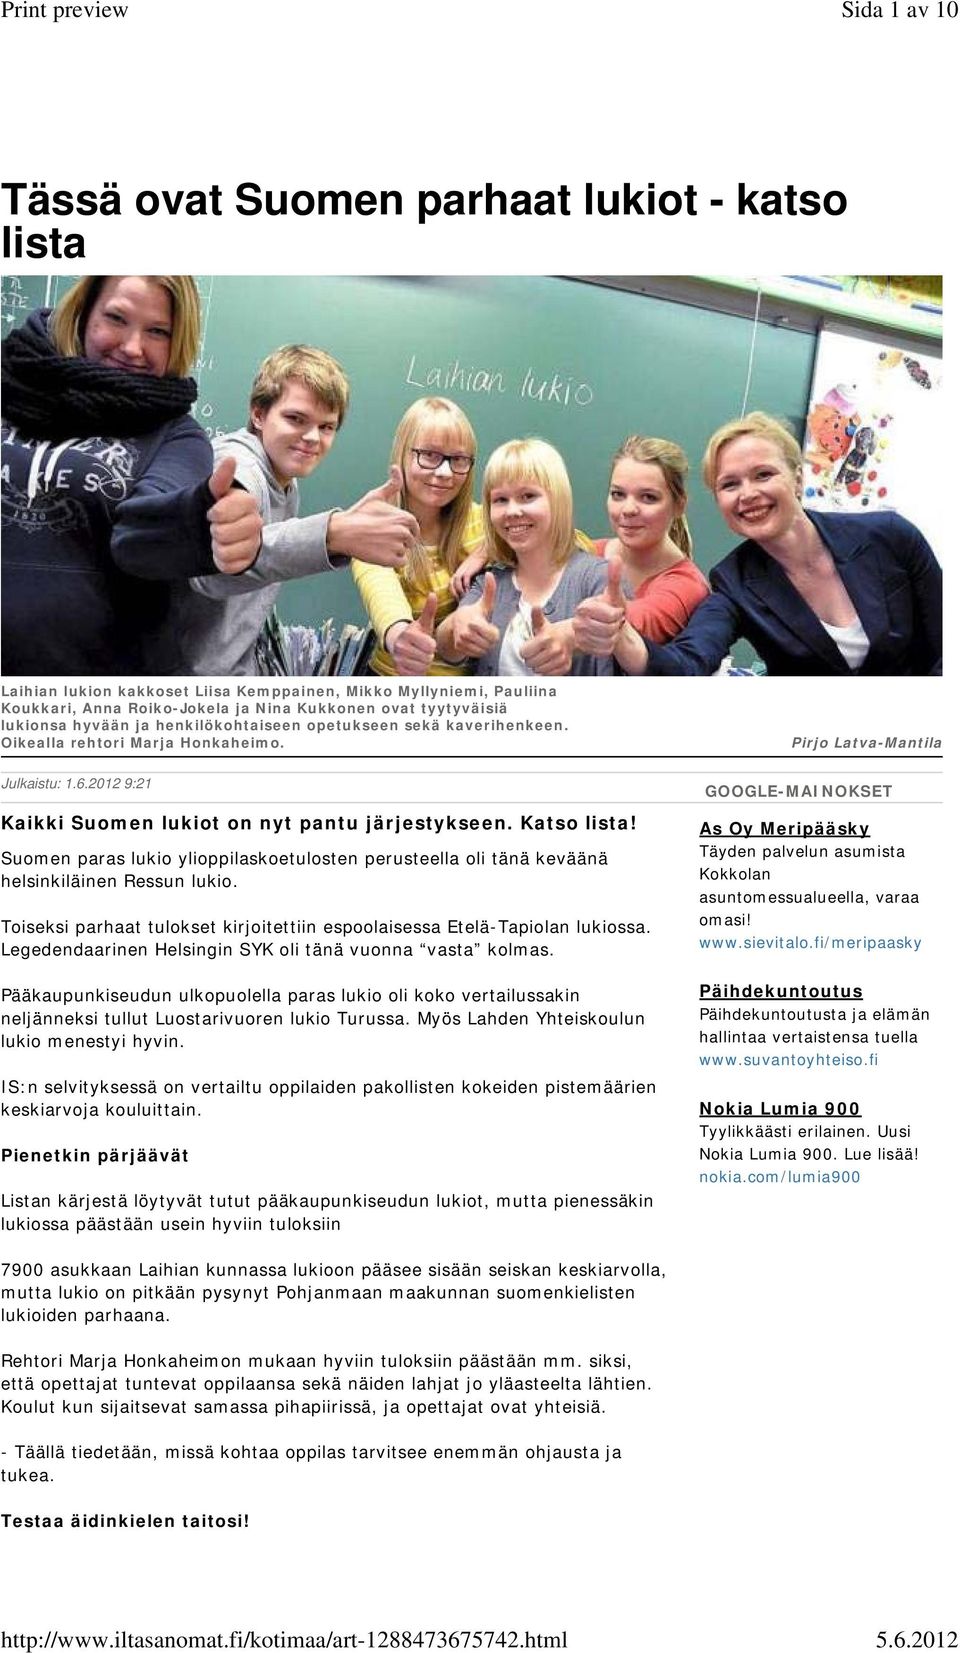 Suomen paras lukio ylioppilaskoetulosten perusteella oli tänä keväänä helsinkiläinen Ressun lukio. Toiseksi parhaat tulokset kirjoitettiin espoolaisessa Etelä-Tapiolan lukiossa.